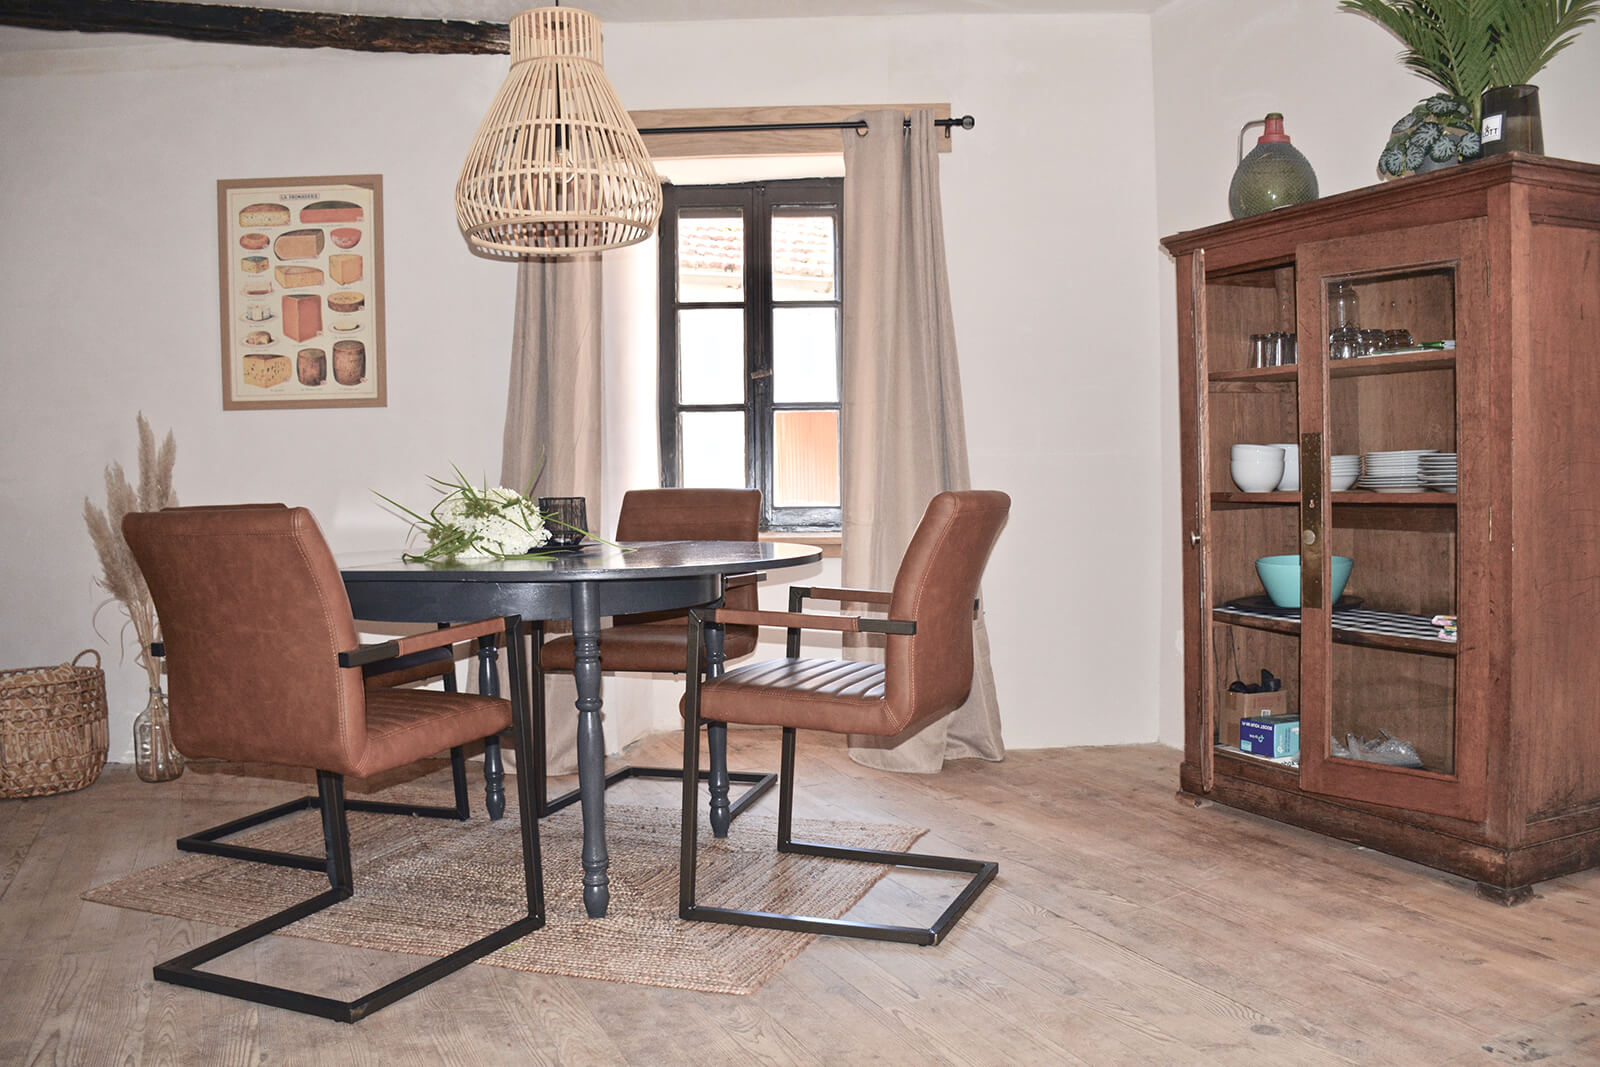 Keuken vakantiehuis LOTT Duravel landelijke ruime eettafel met stoelen